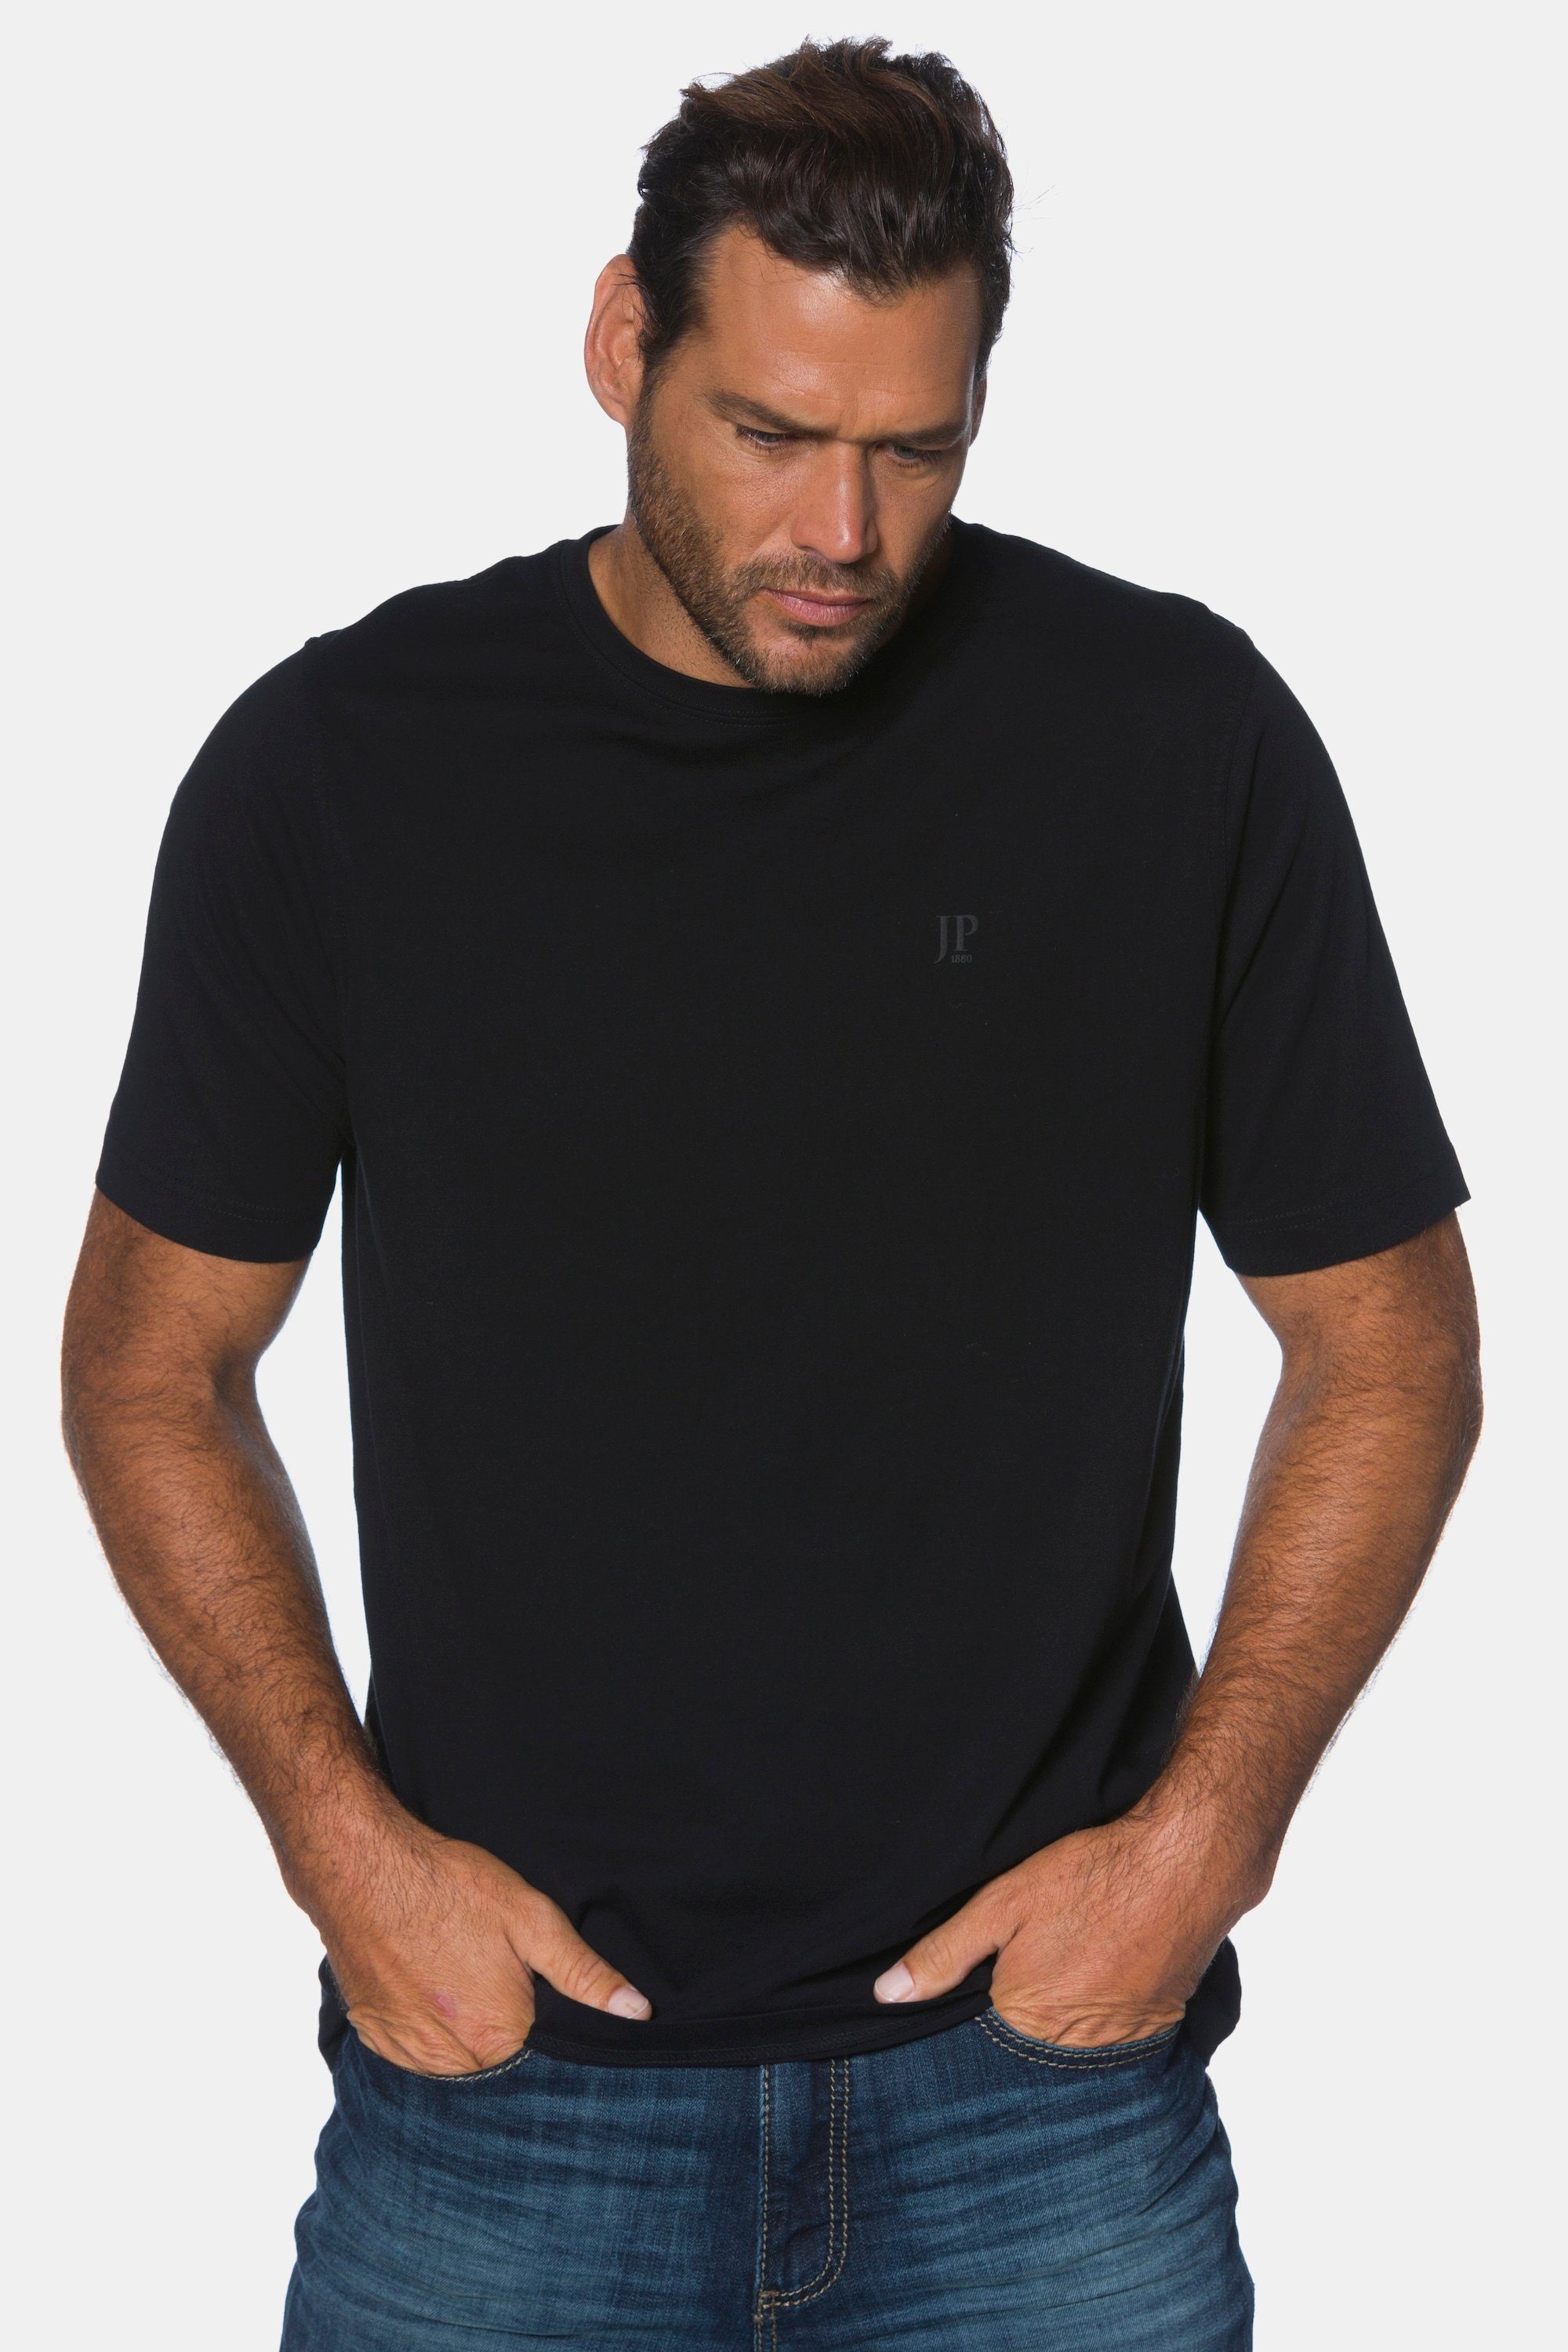 Bis zu 10 % Rabatt-Gutschein JP1880 T-Shirt T-Shirt Basic Rundhals gekämmte 8XL Baumwolle schwarz bis